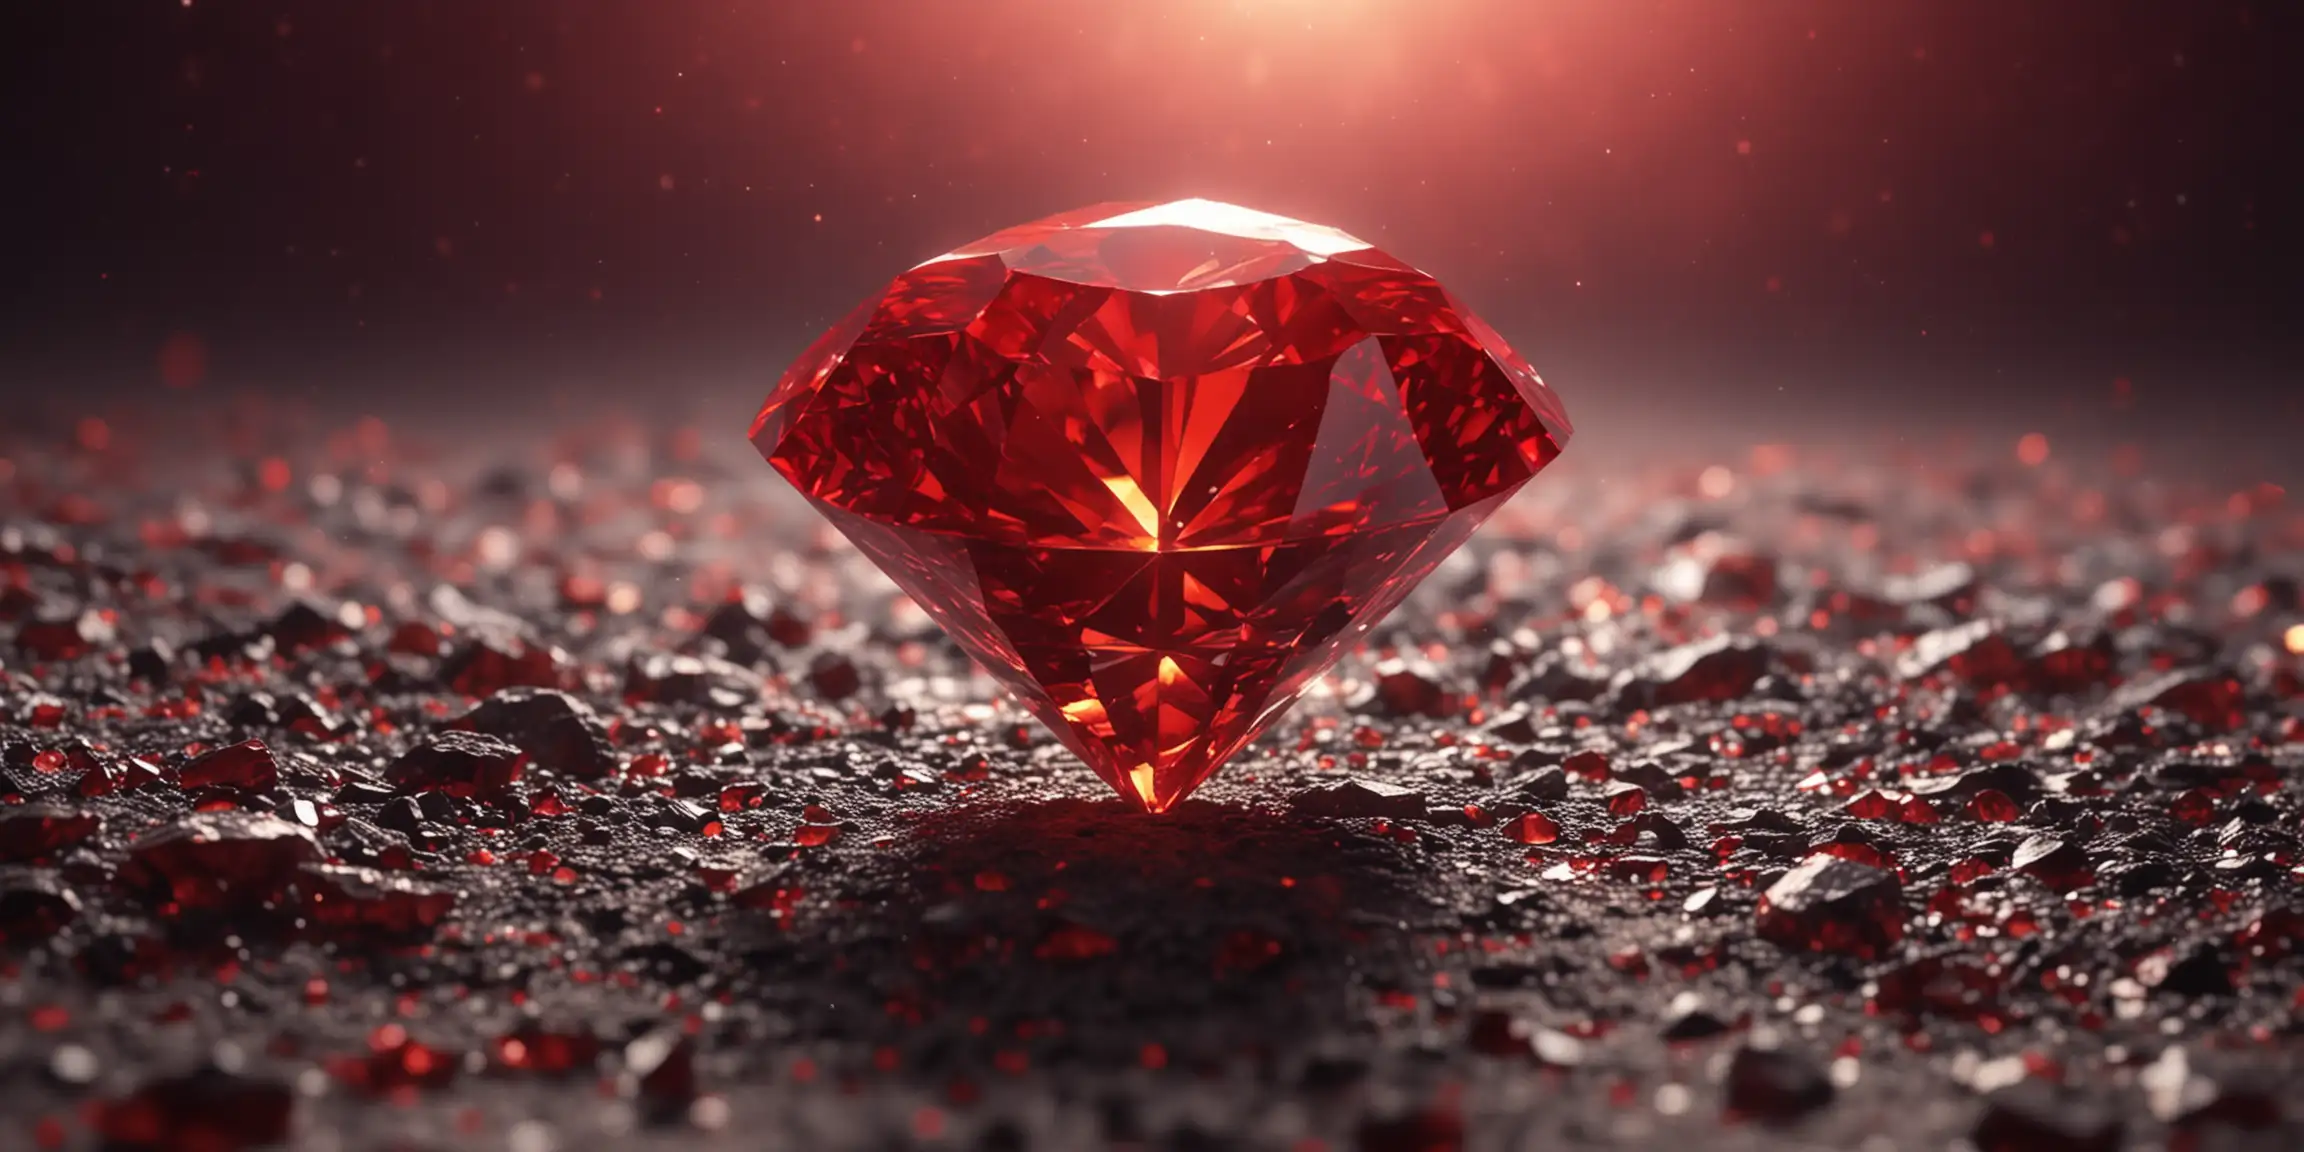 red color diamond 在中间，有氛围感的背景，有特效，亮红色带一些金色的色调，逼真，4k高清，